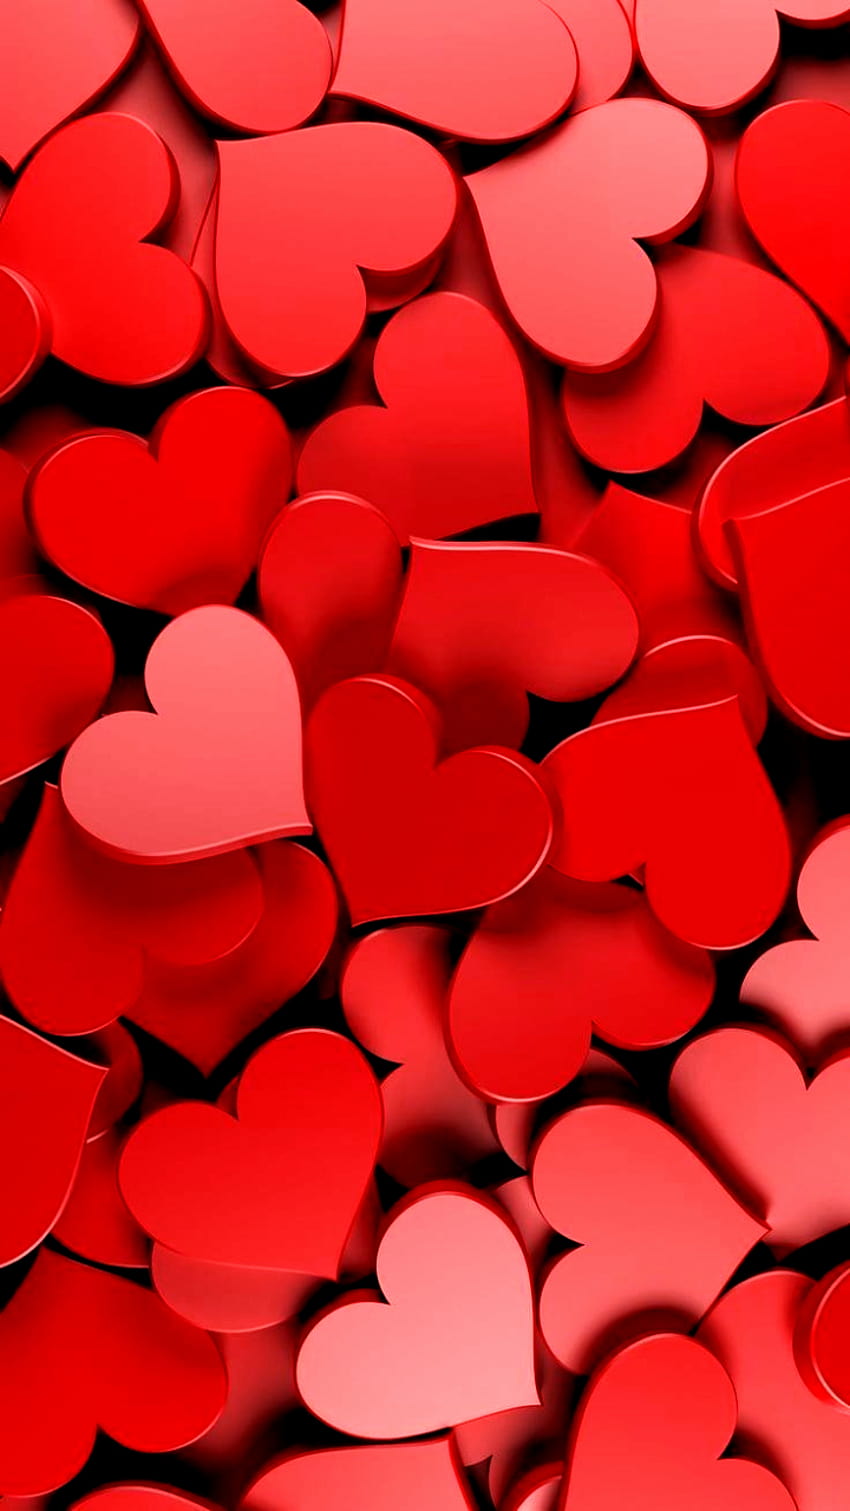 Hình nền tràn đầy màu đỏ sẽ khiến bạn cảm thấy tình yêu đang ở khắp nơi xung quanh. Điều này sẽ giúp bạn cảm thấy yêu đời hơn và tìm thấy niềm vui trong những thứ đơn giản nhất.